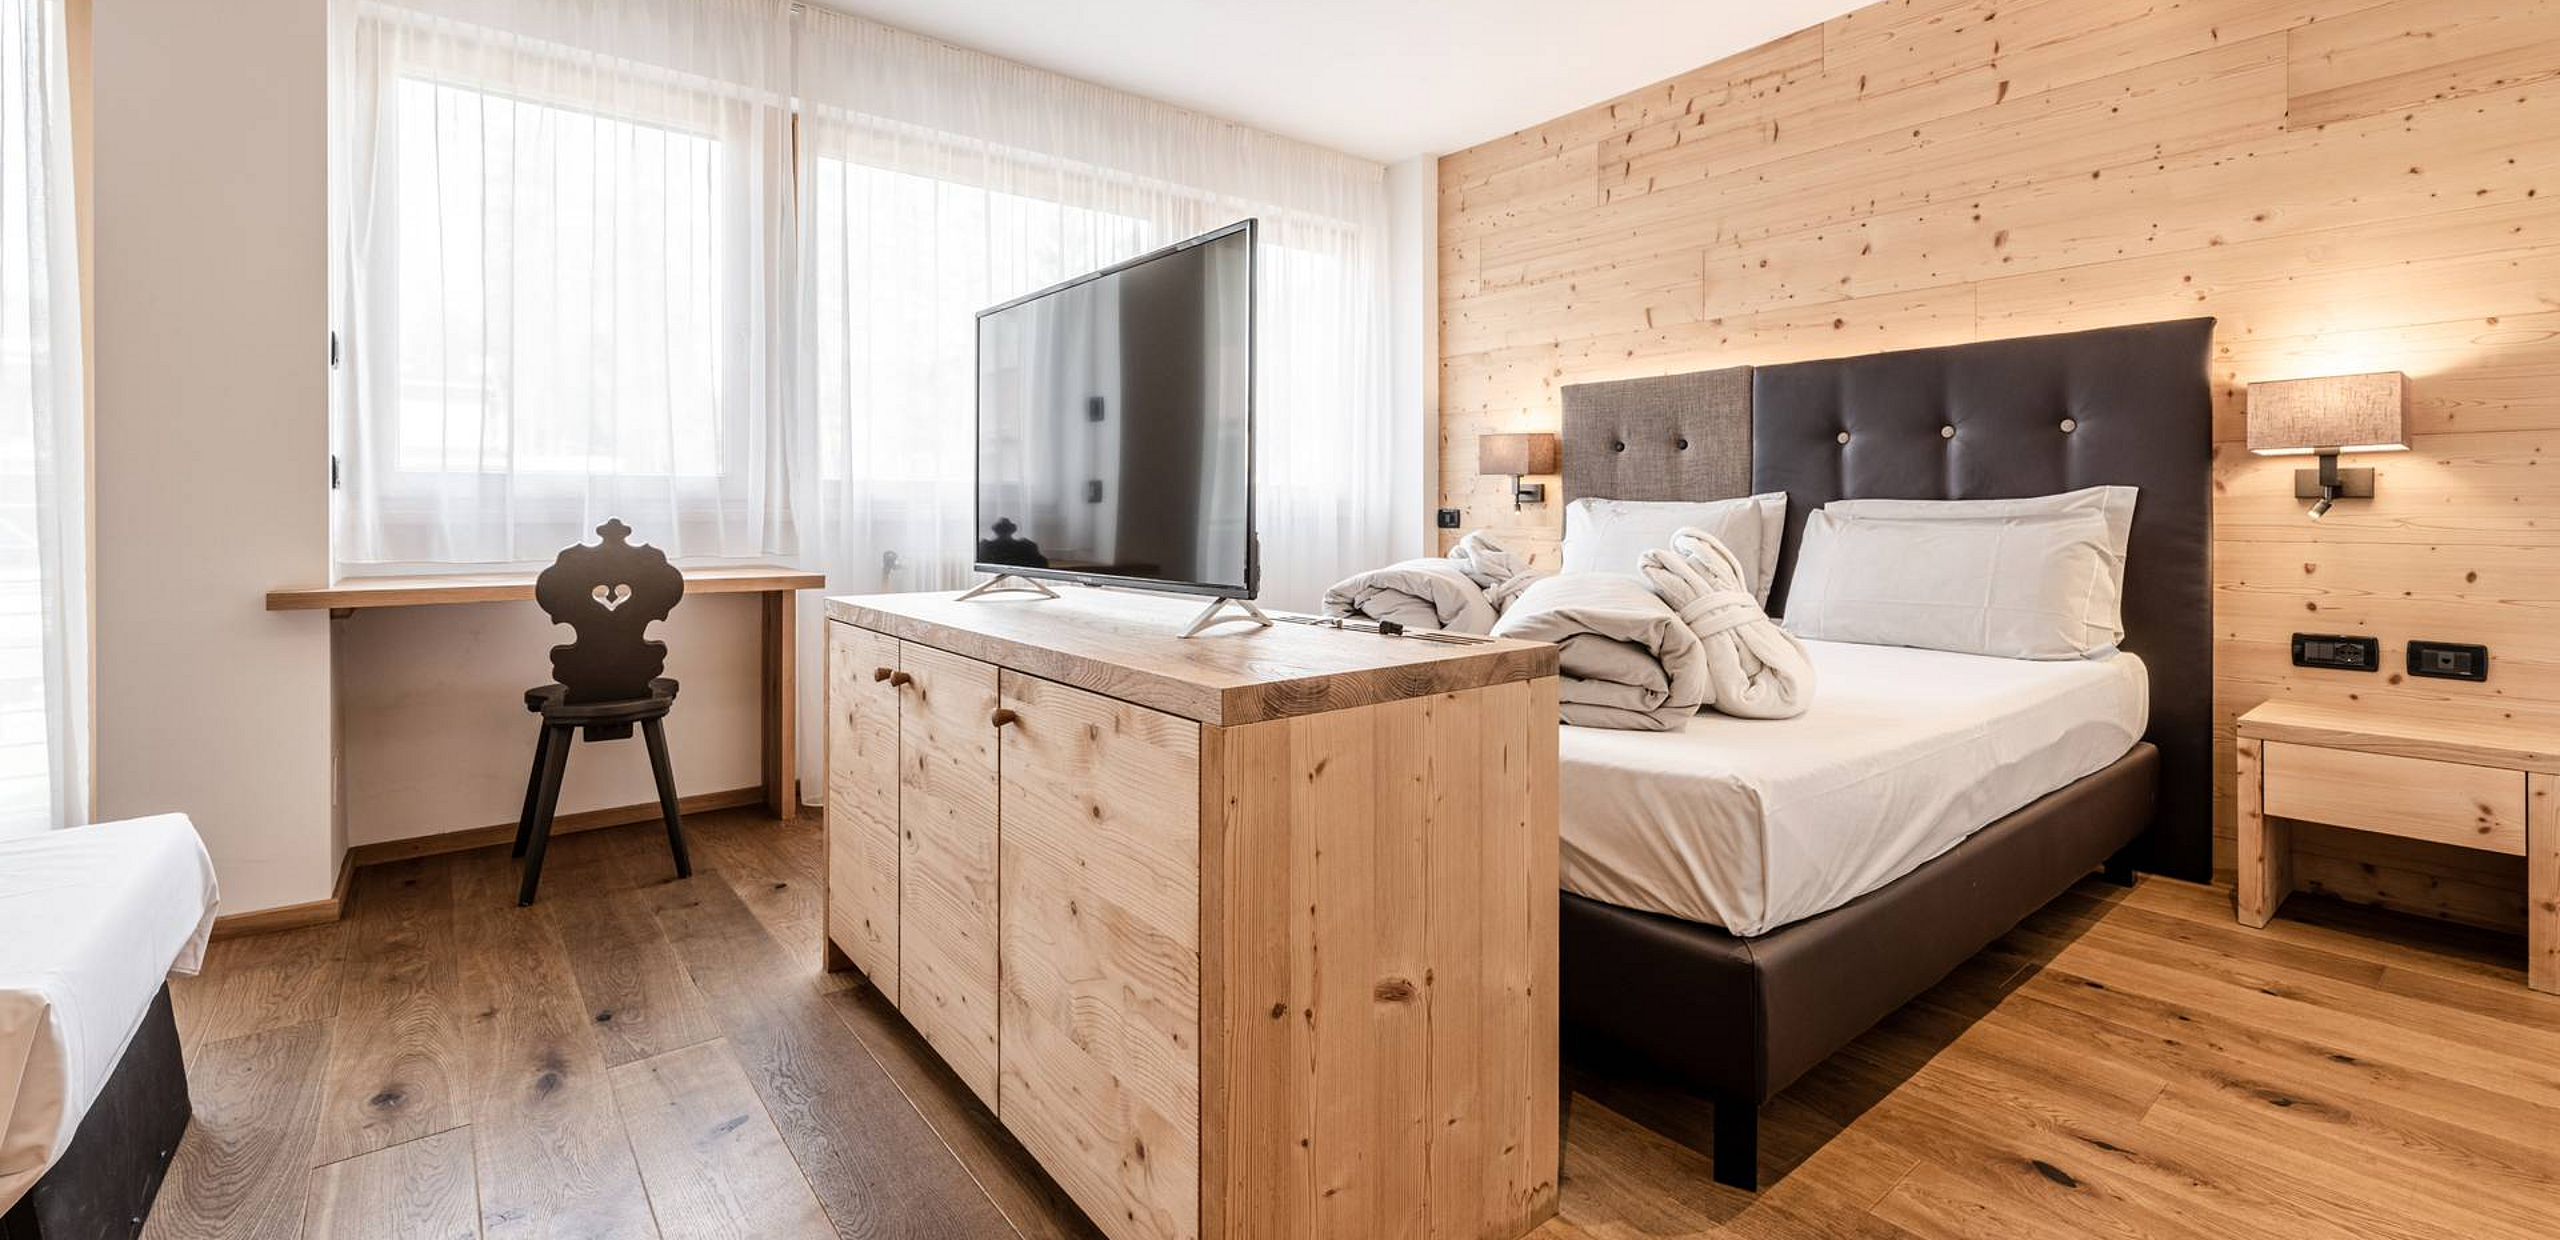 Suite in albergo a Marilleva - Sporting Hotel Ravelli